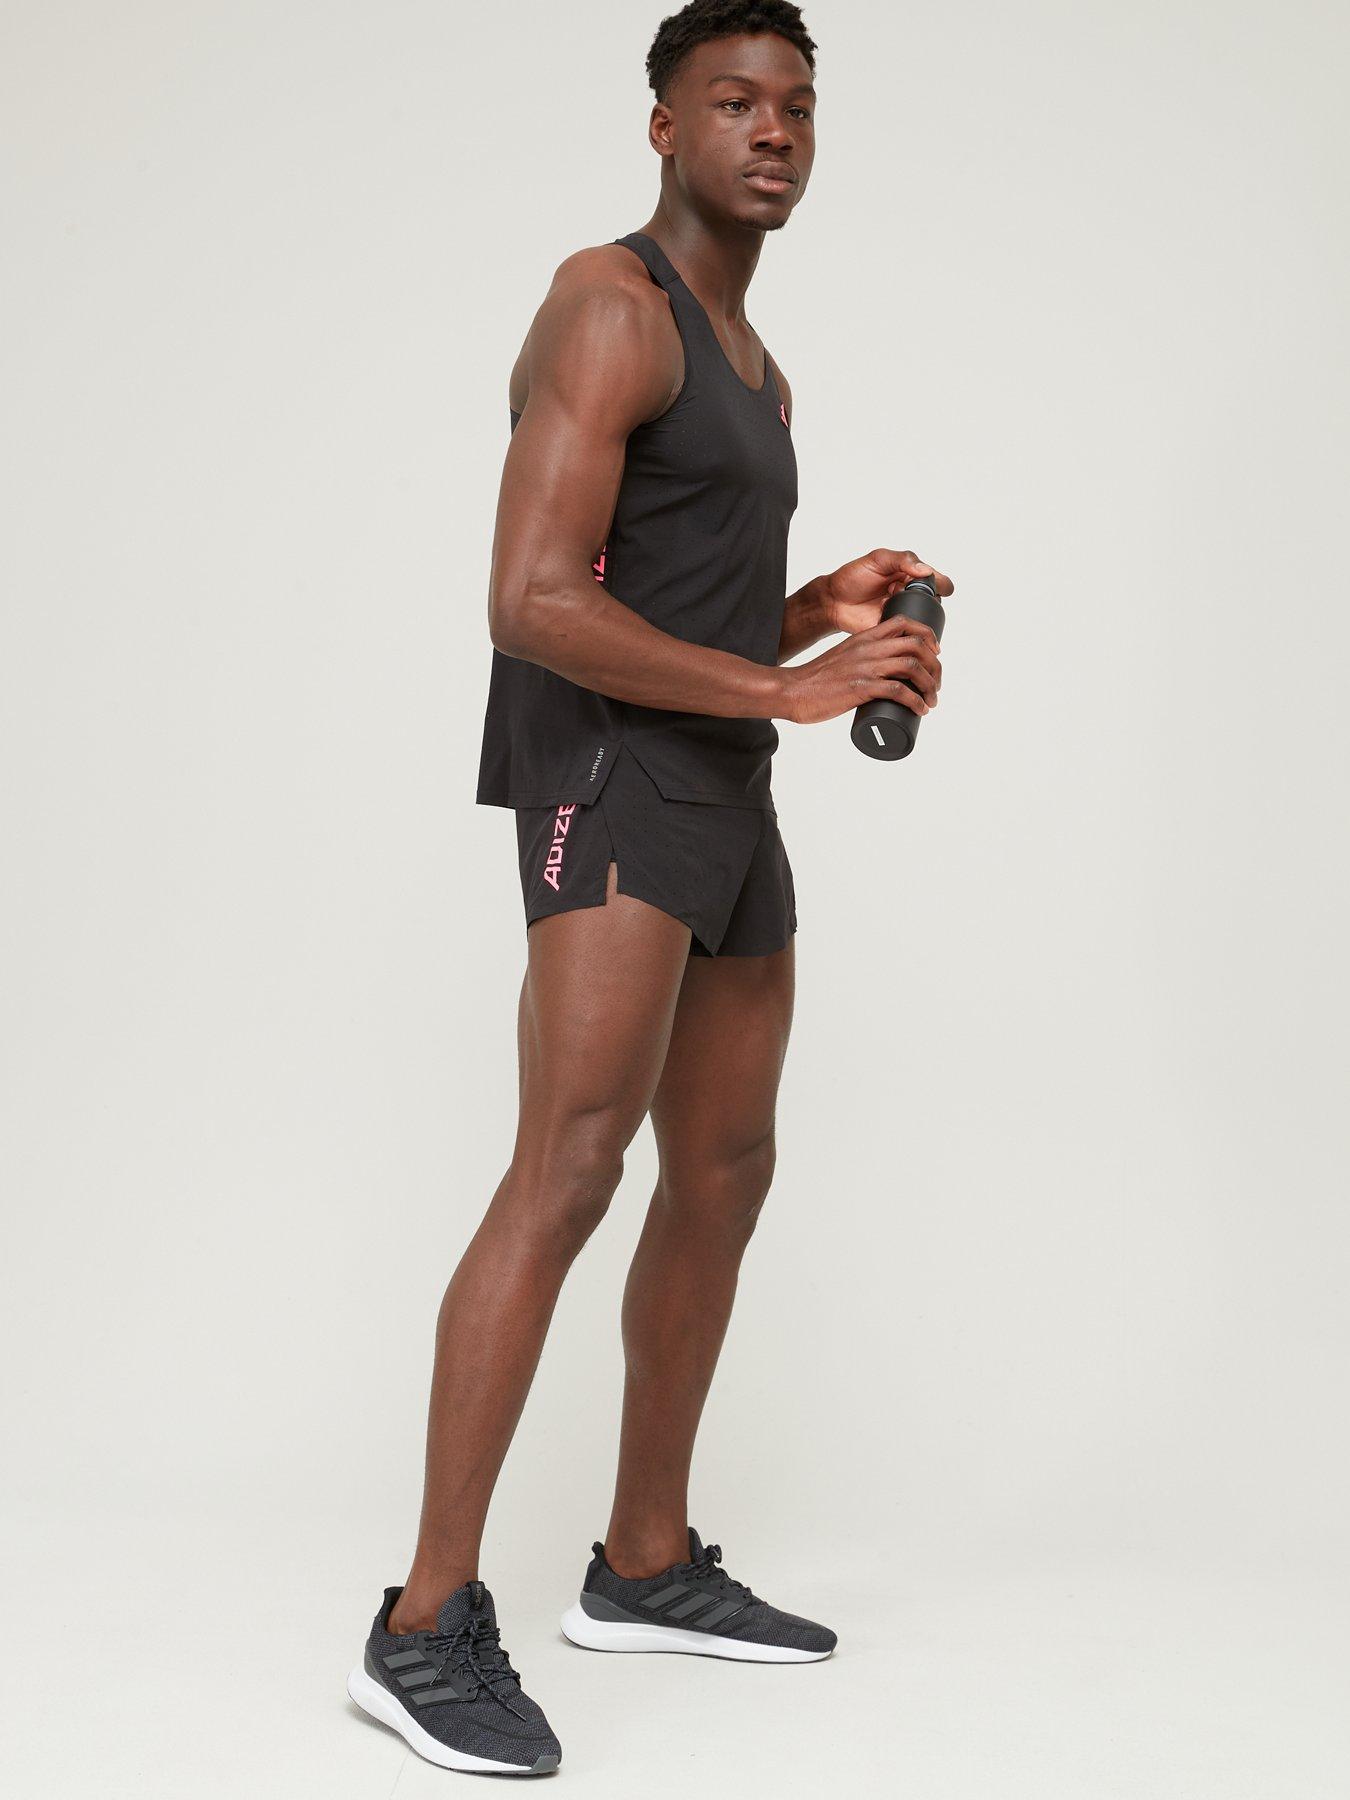 adidas Men's Adizero Running Singlet Running Vest - Black